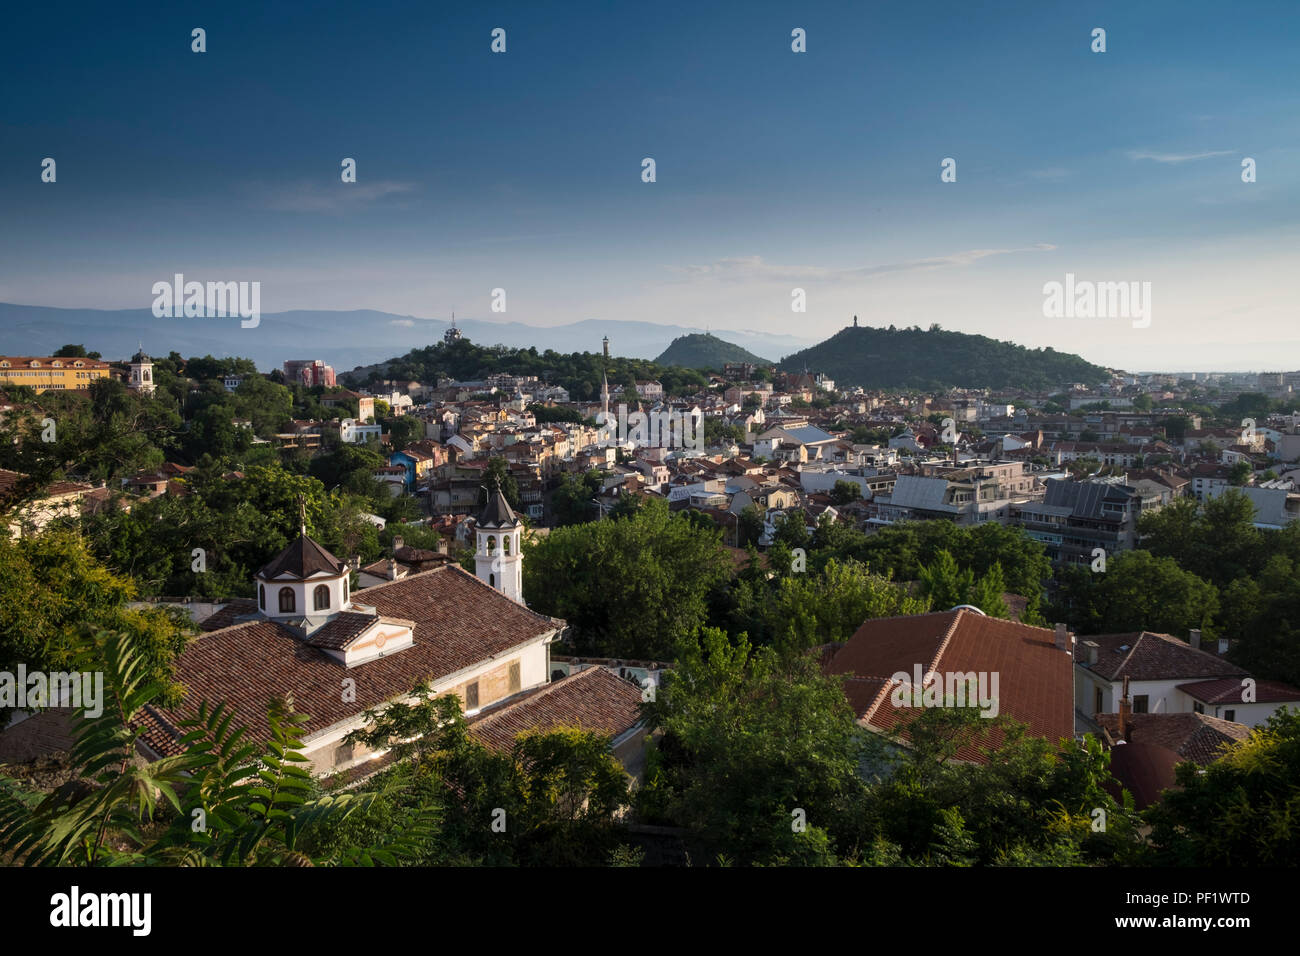 Una vista sopra la città vecchia di Plovdiv, Bulgaria, la seconda più grande città. La città sarà Capitale Europea della Cultura nel 2019. Foto Stock